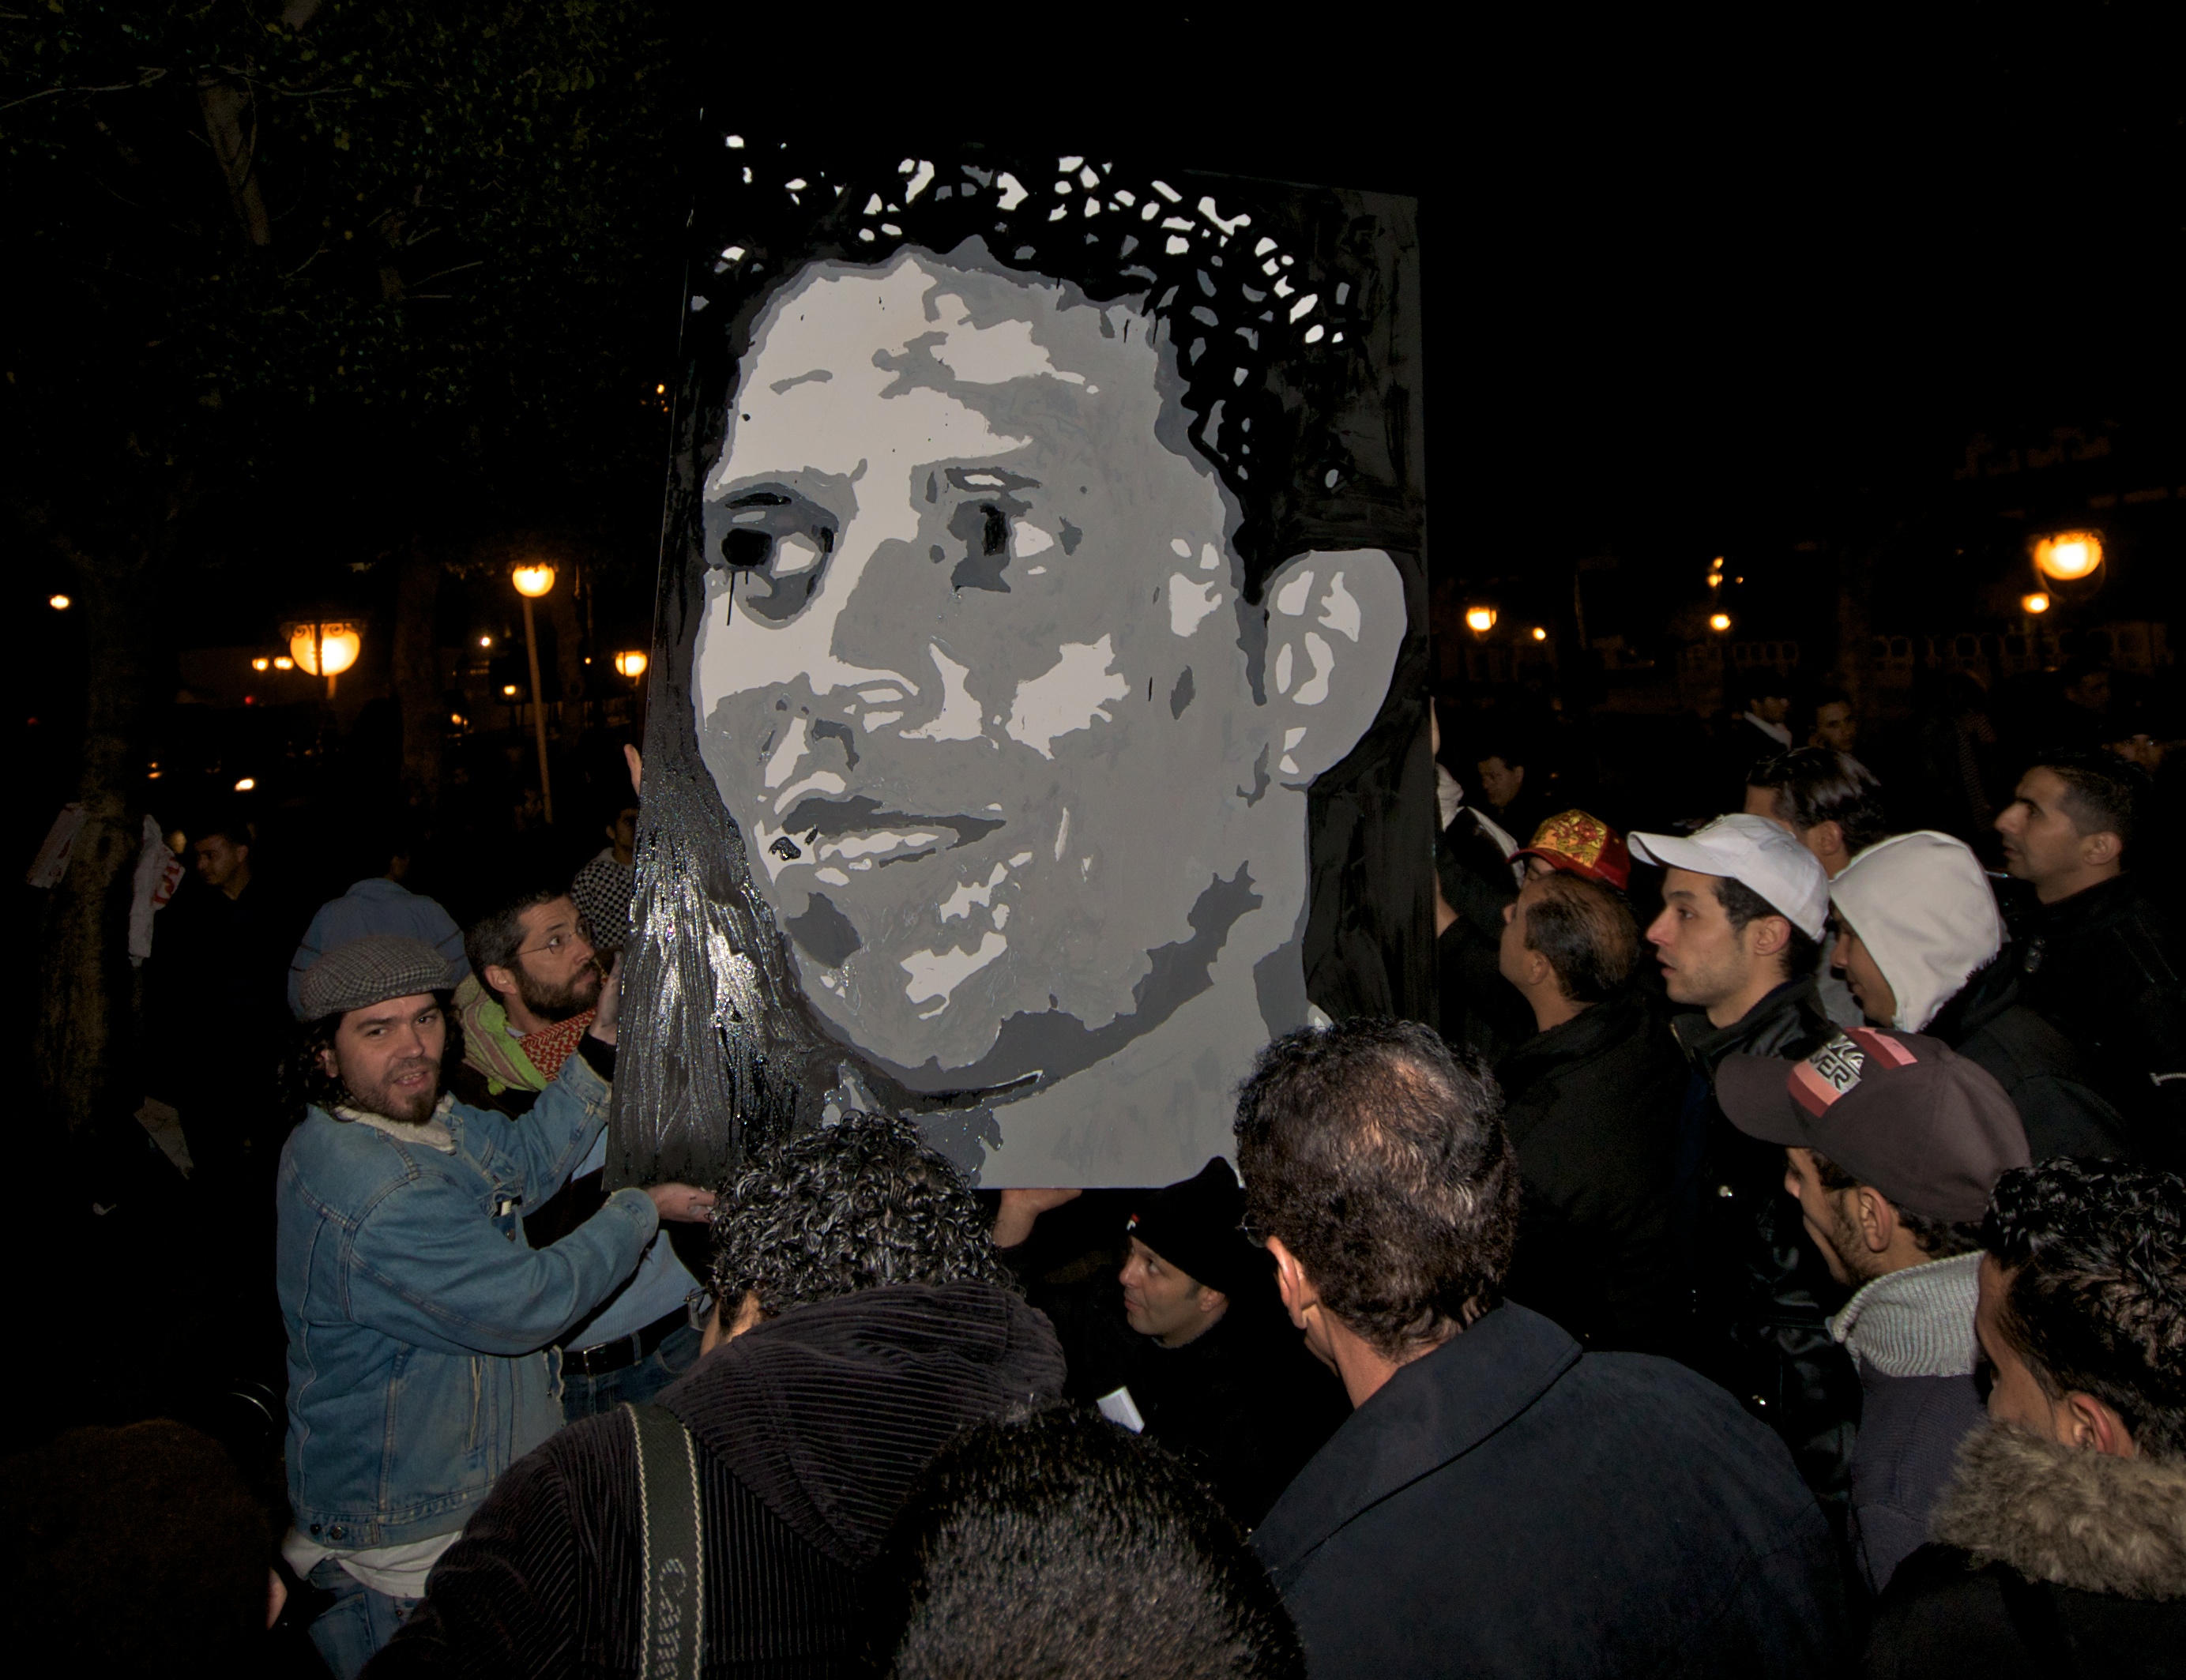 In memory of Mohammed Bouazizi http://en.wikipedia.org/wiki/Mohamed_Bouazizi